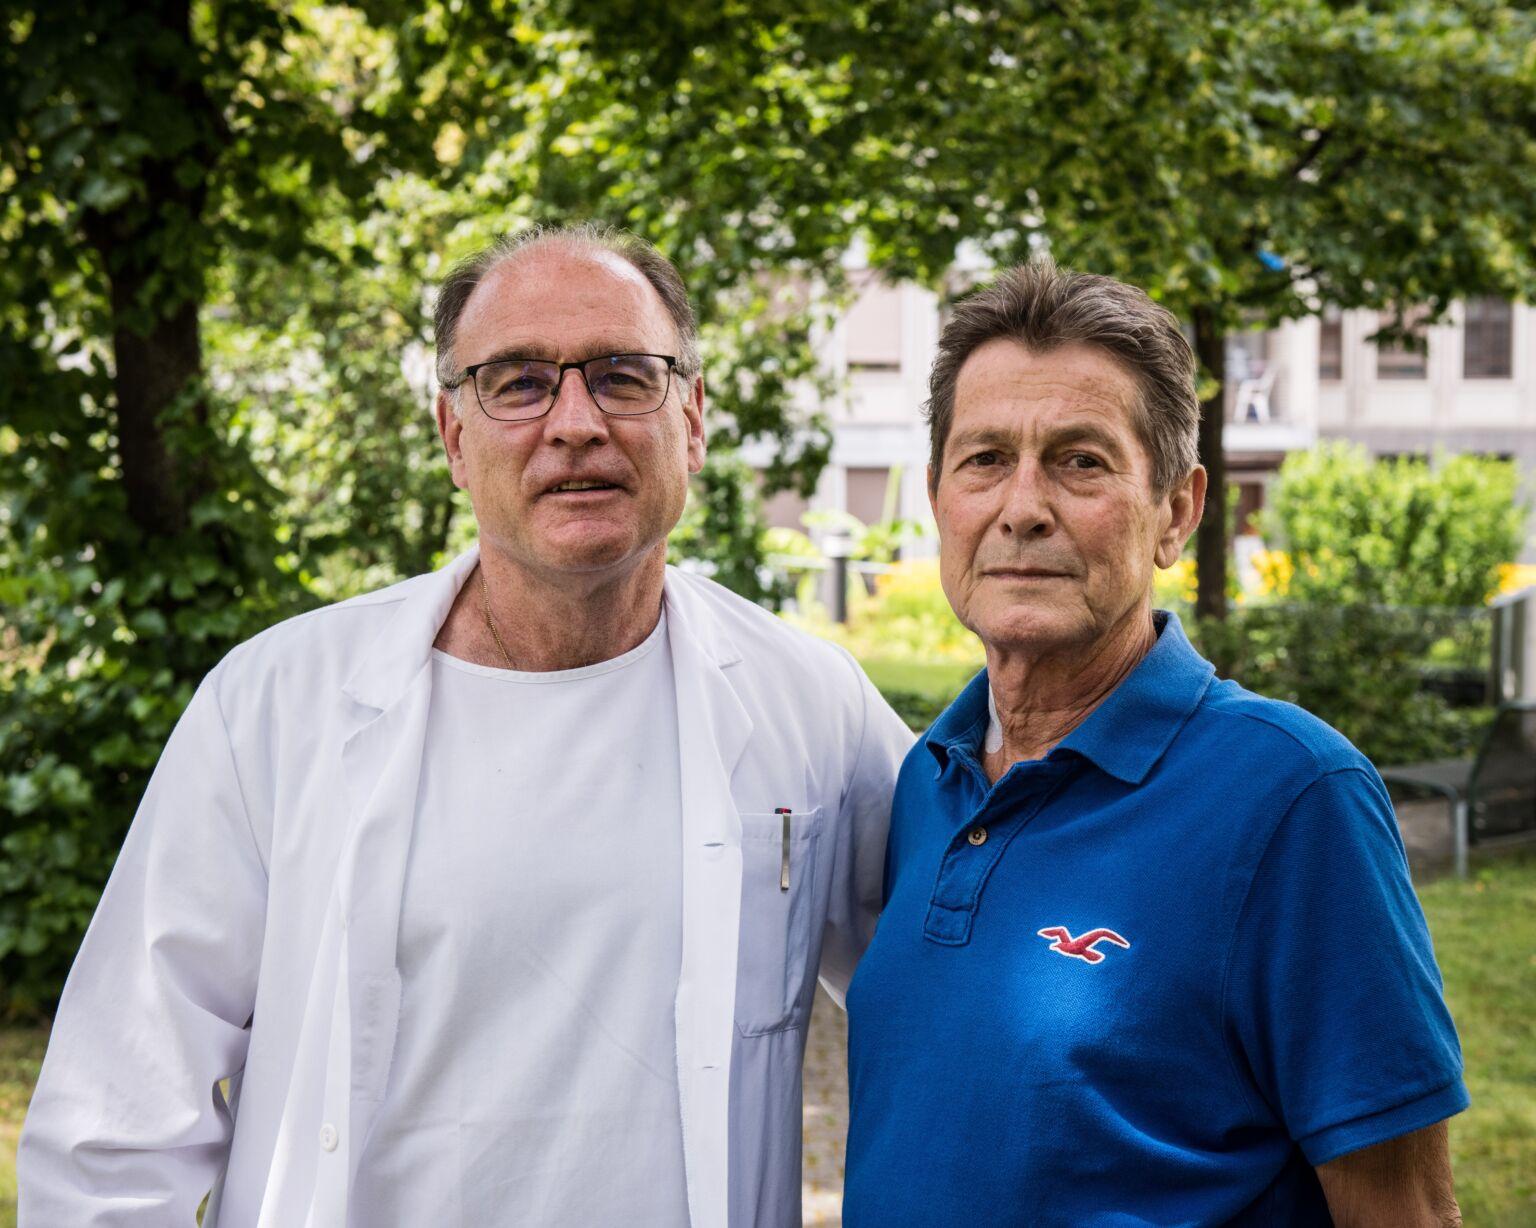 Le professeur Pierre-Alain Clavien, chirurgien, et son patient, bénéficiaire de la transplantation, après sa sortie de l'hôpital. [USZ.ch]